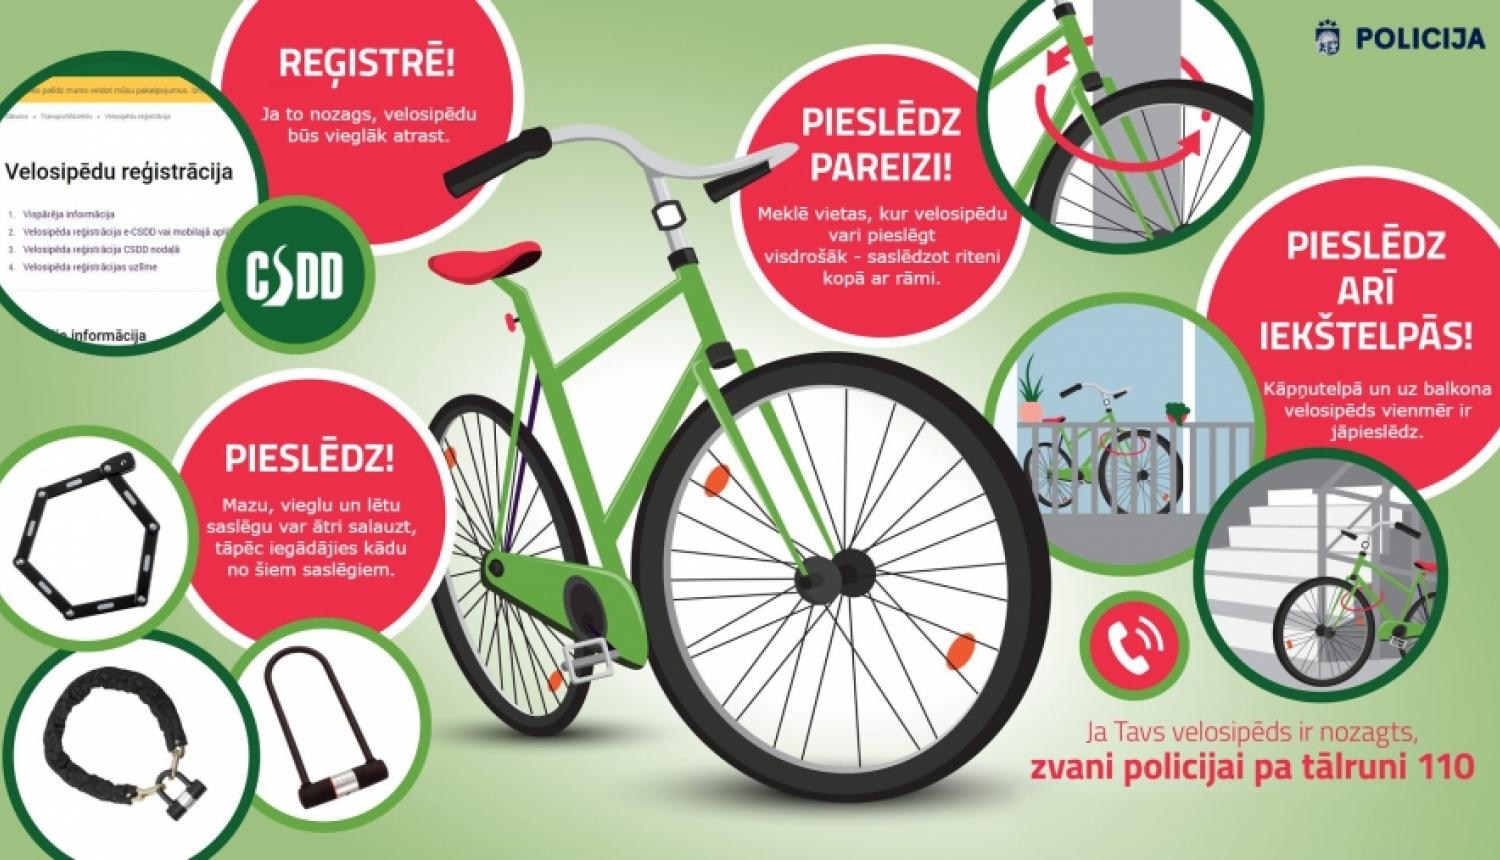 Pēdējā gada laikā ievērojami audzis velosipēdu zādzību skaits; parūpējies par sava velosipēda drošību!